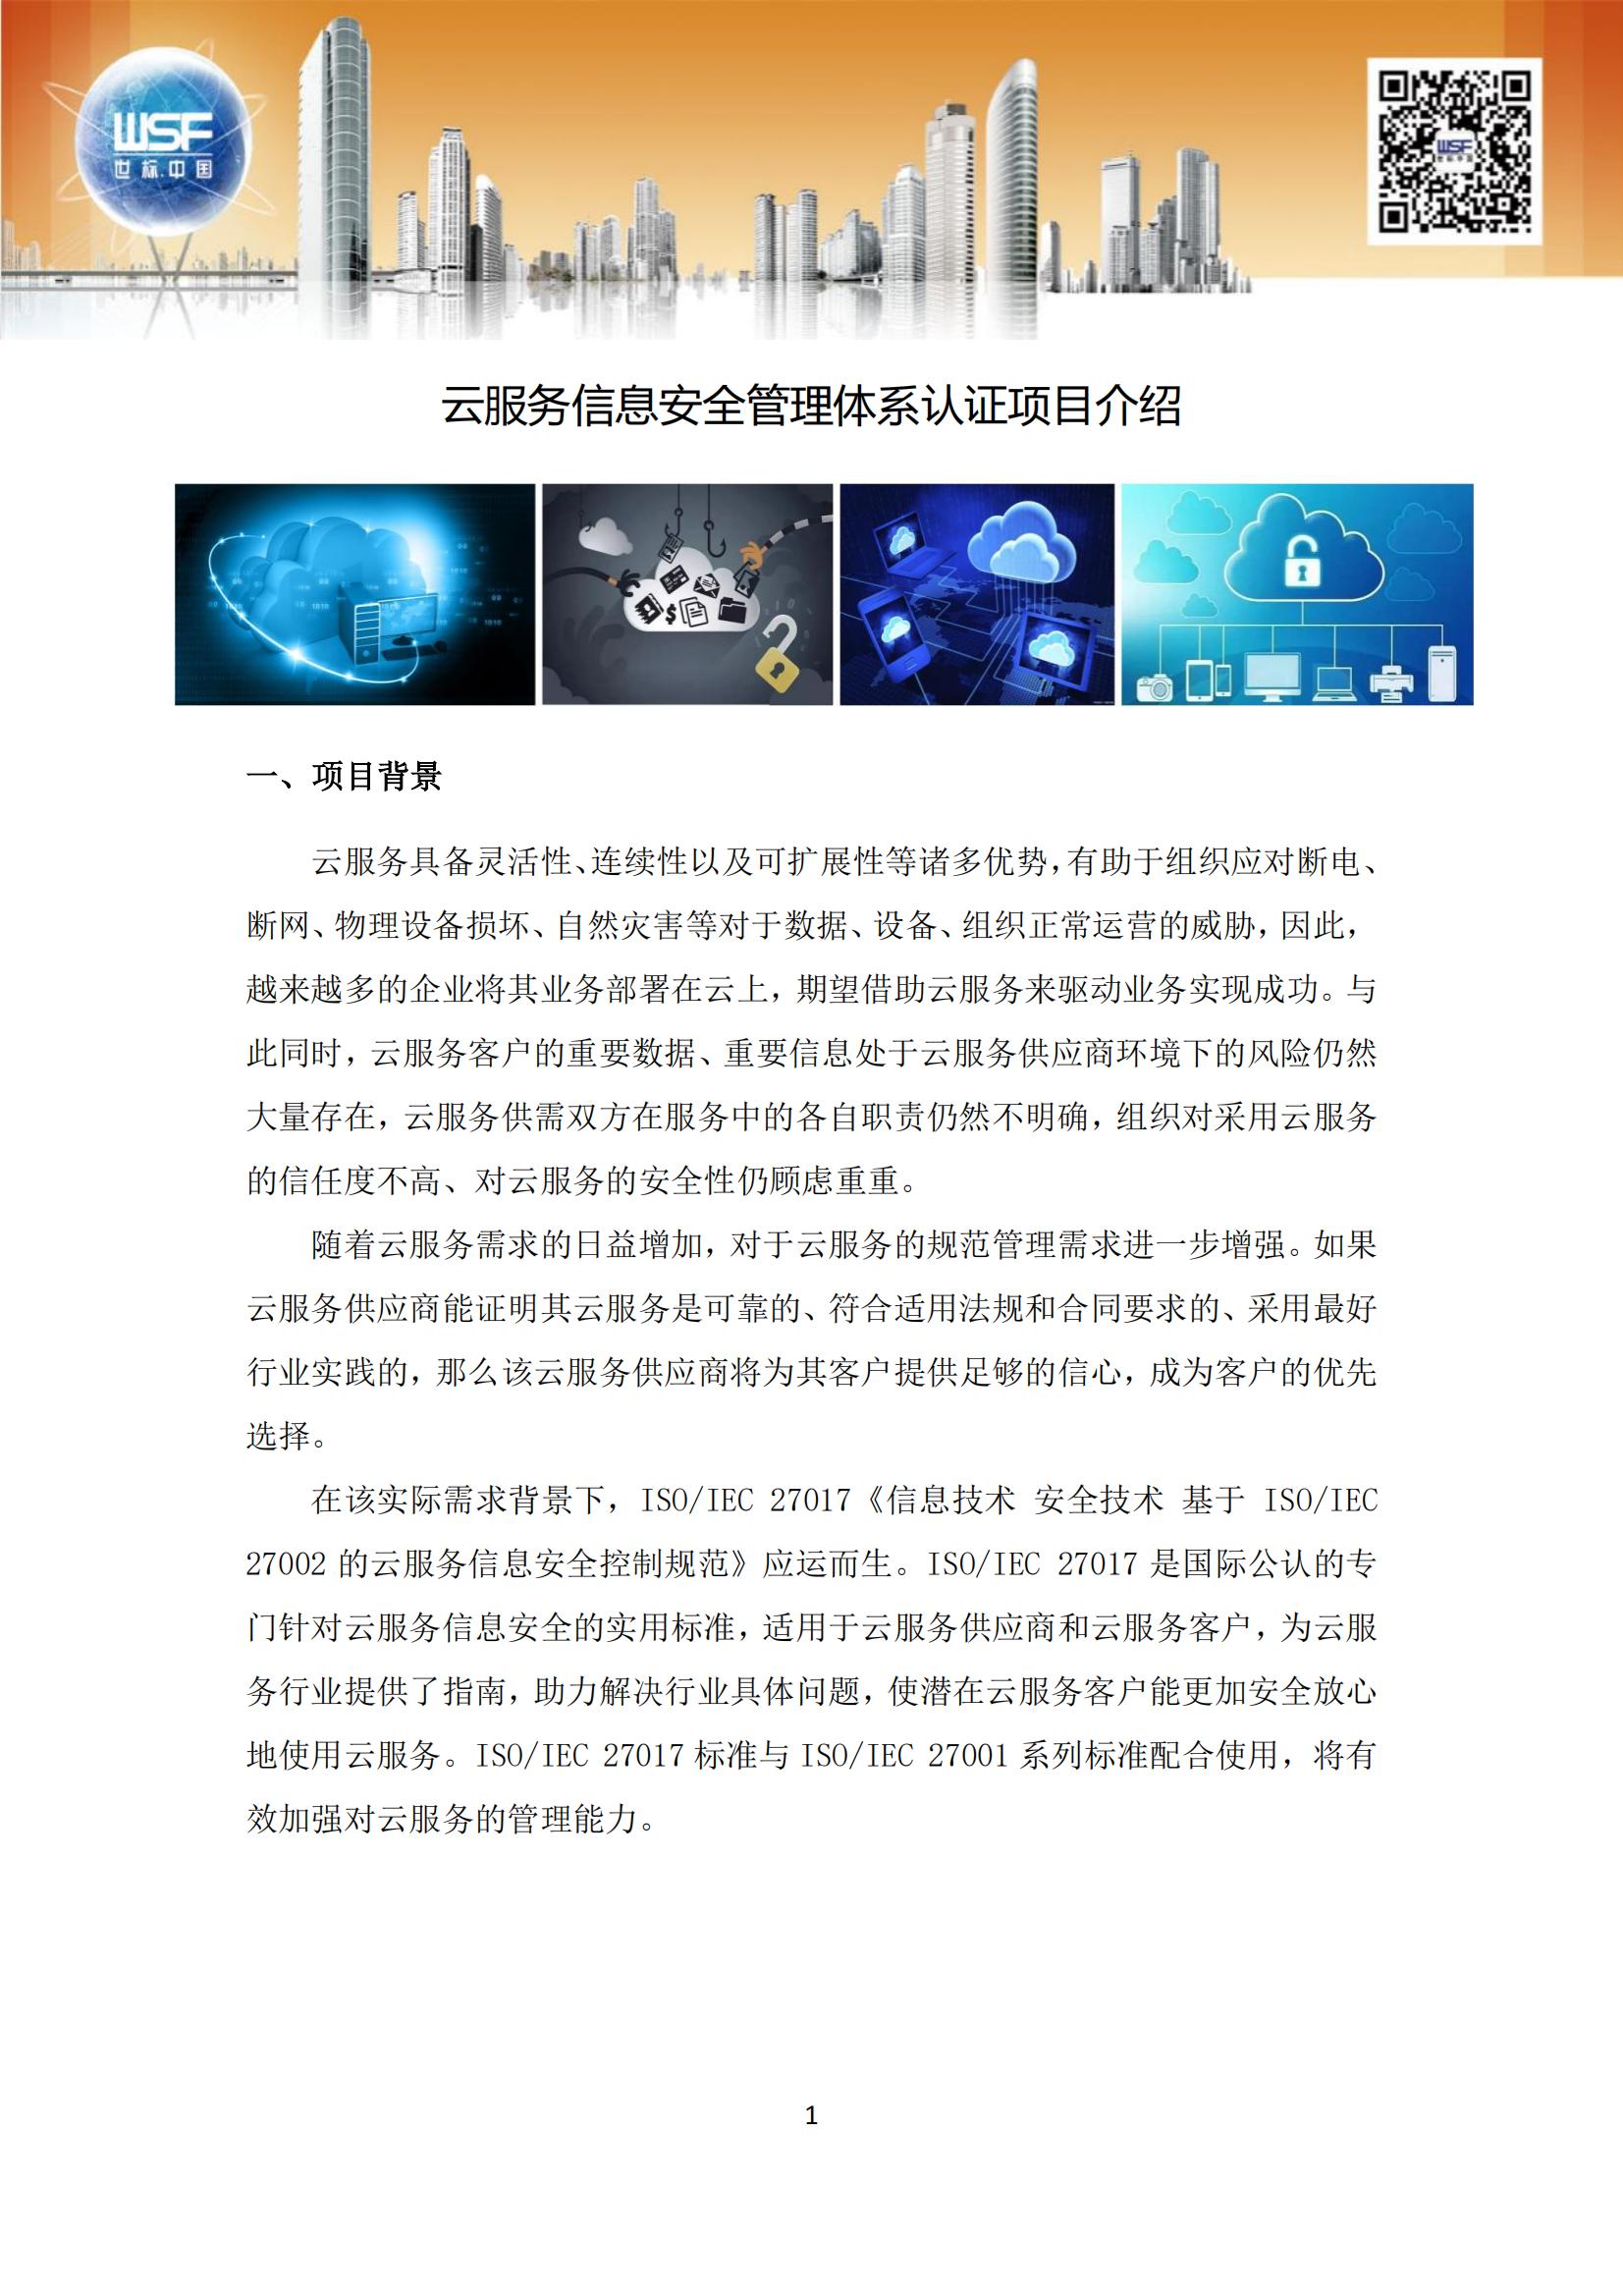 云服务信息安全管理体系认证项目介绍_00.jpg